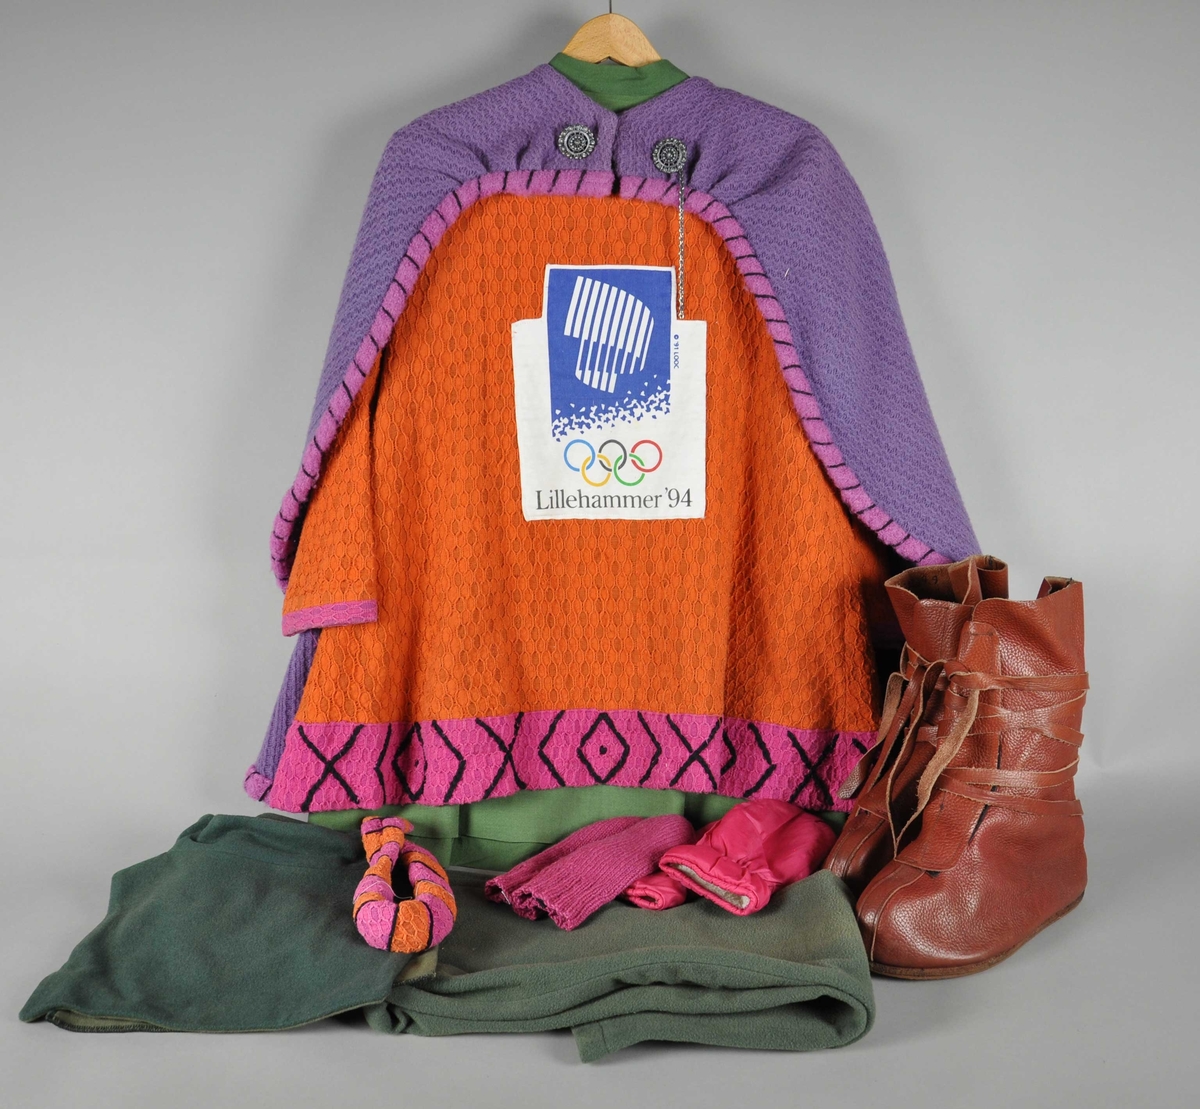 Maskotdrakt bestående av kappe, trøye med logo, kjole, bukse, hårbånd, hals (krage), votter og støvler.